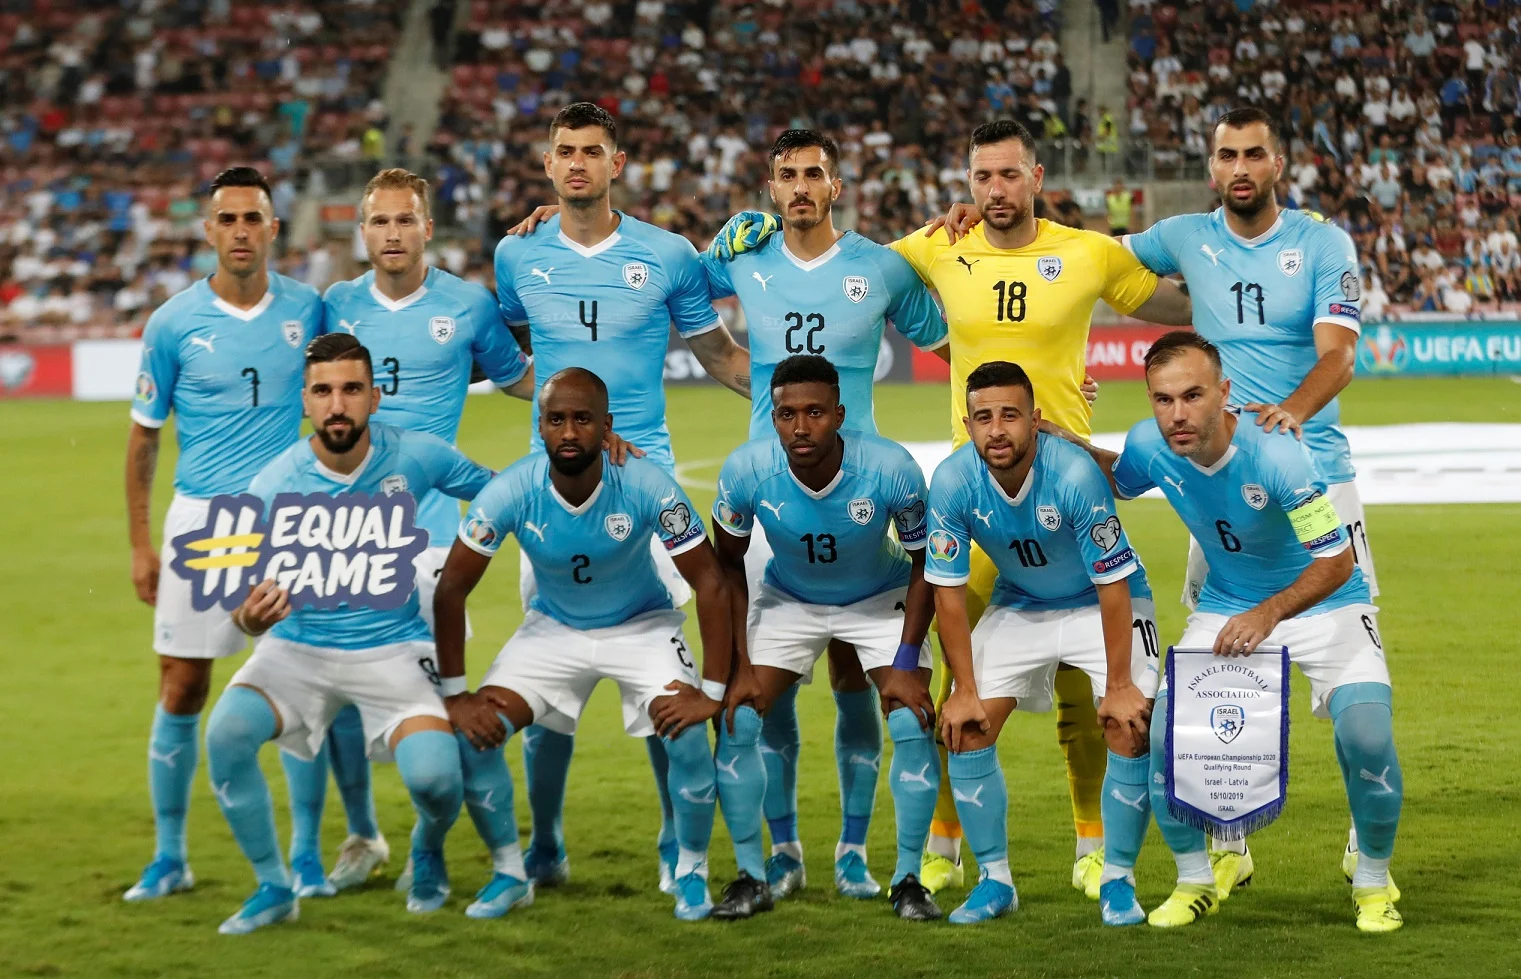 משחק נבחרת ישראל מול נבחרת לטביה בכדורגל בבאר שבע